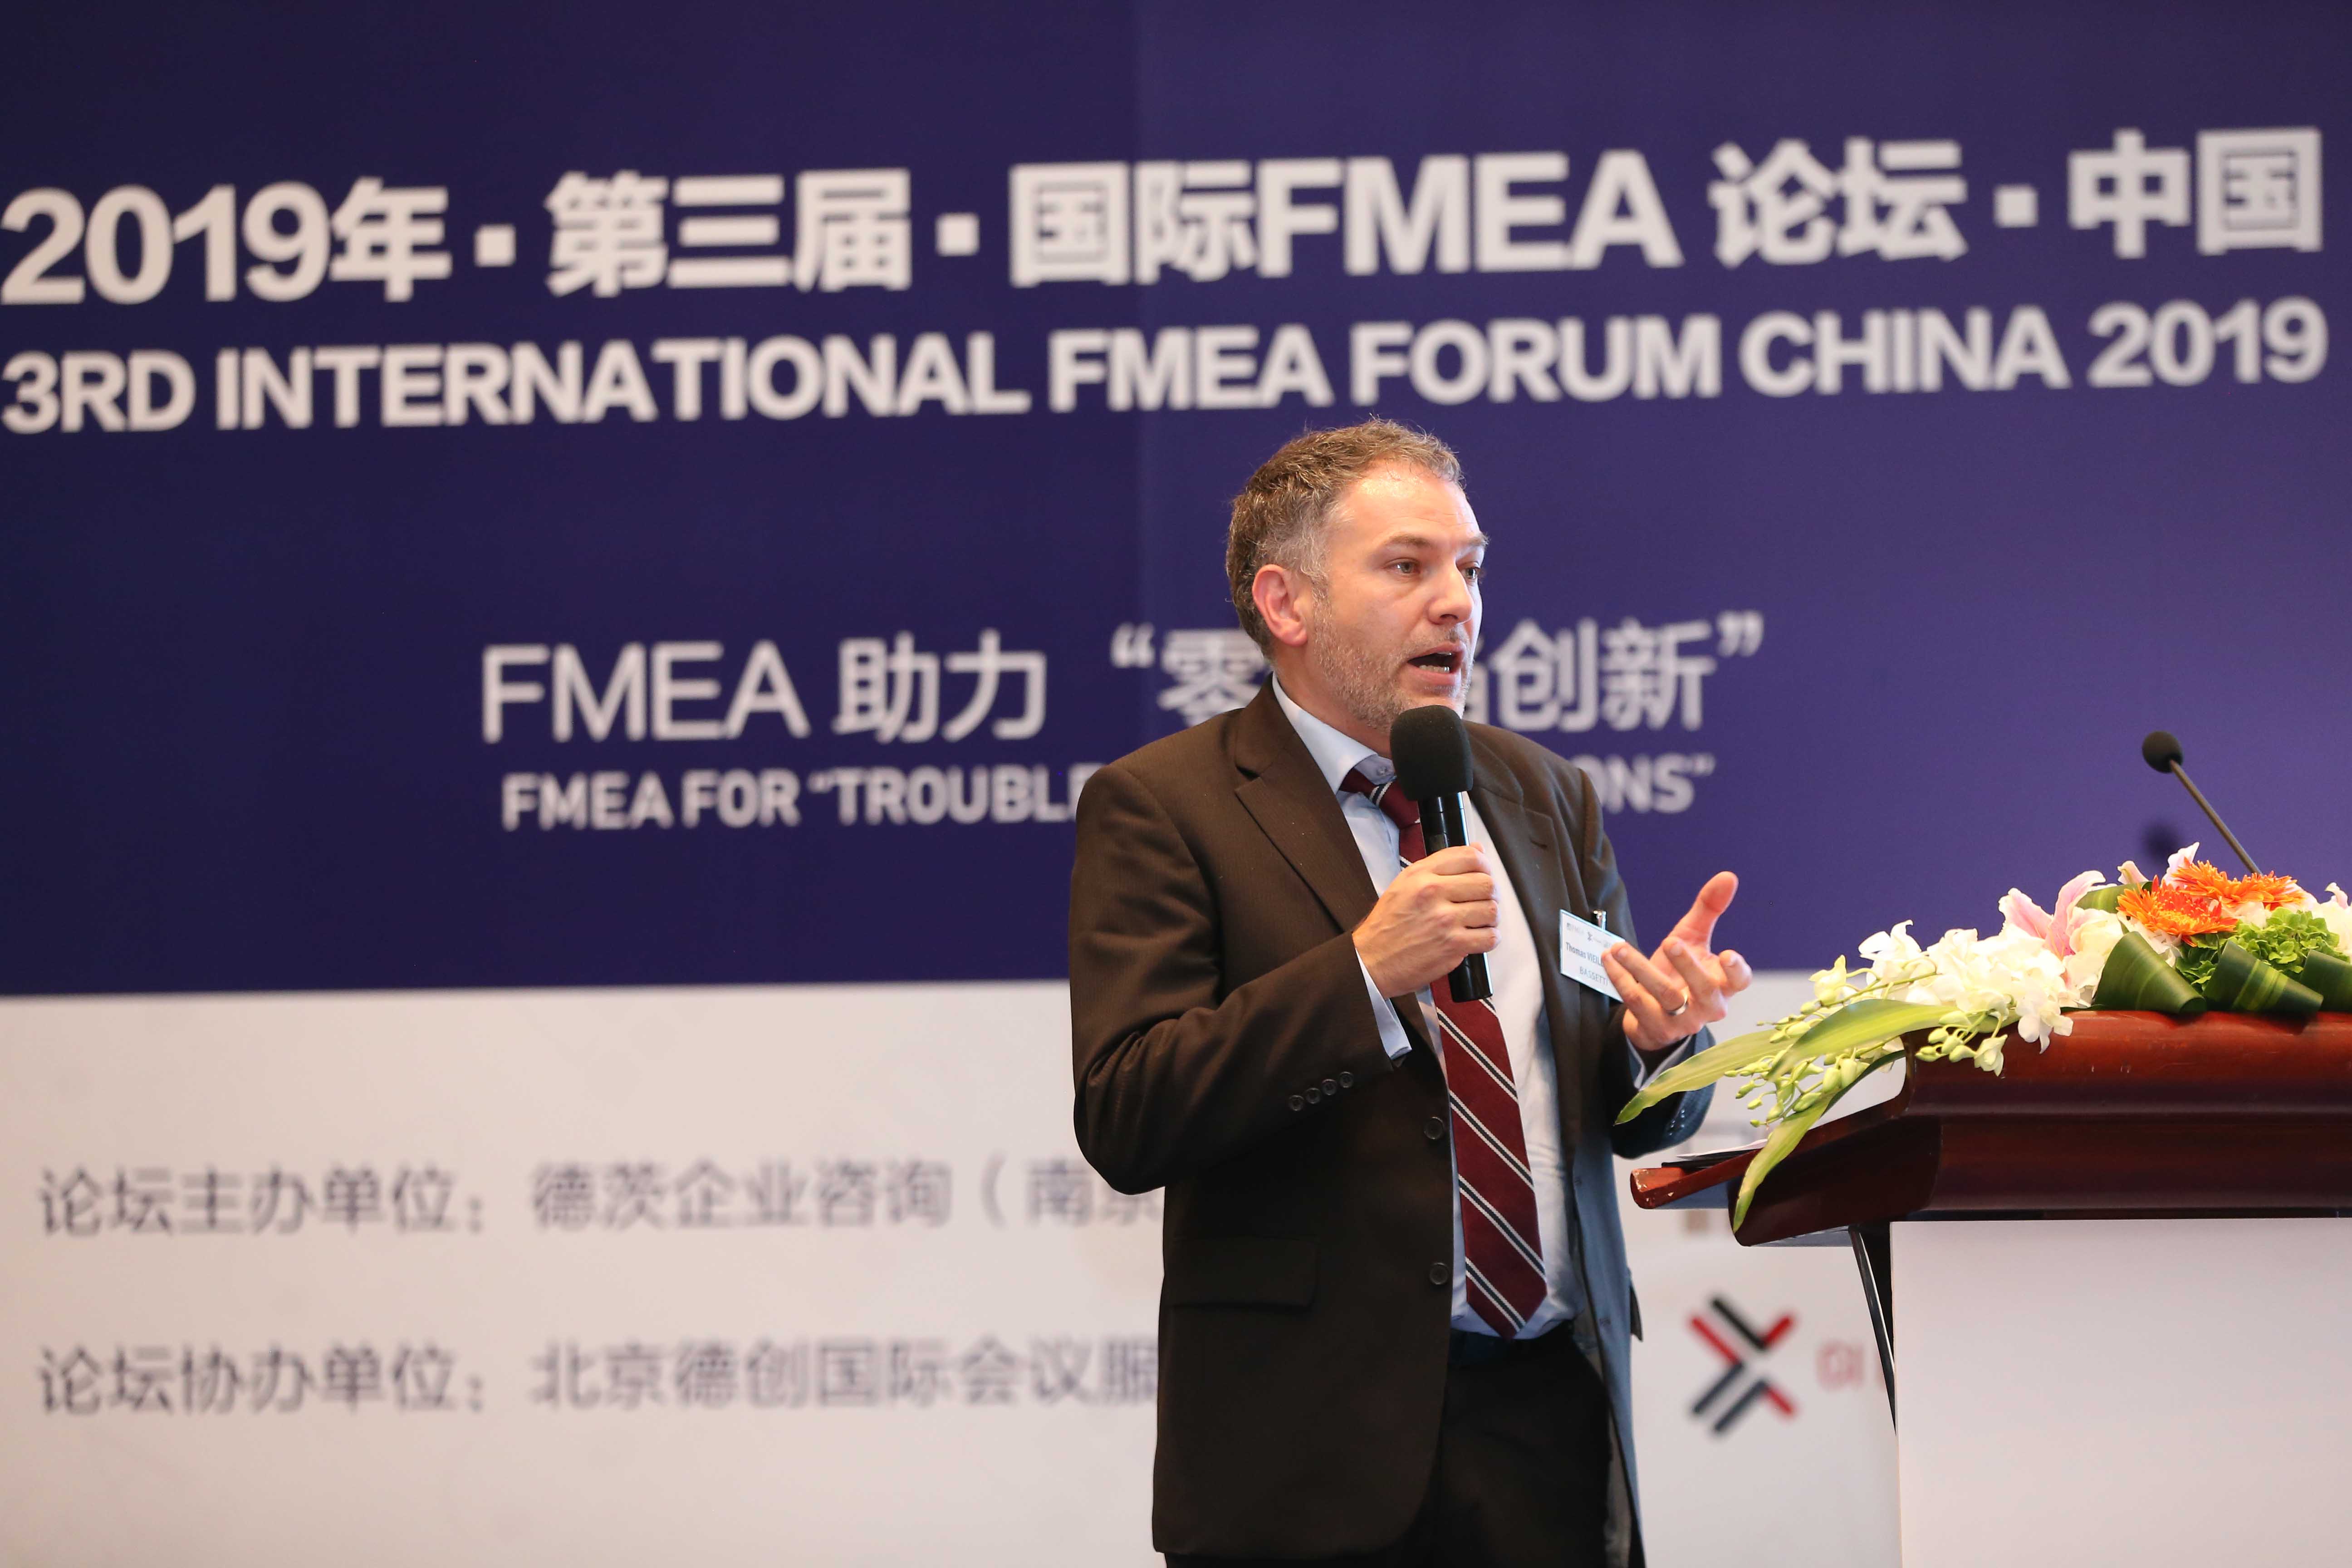 FMEA助力零缺陷创新